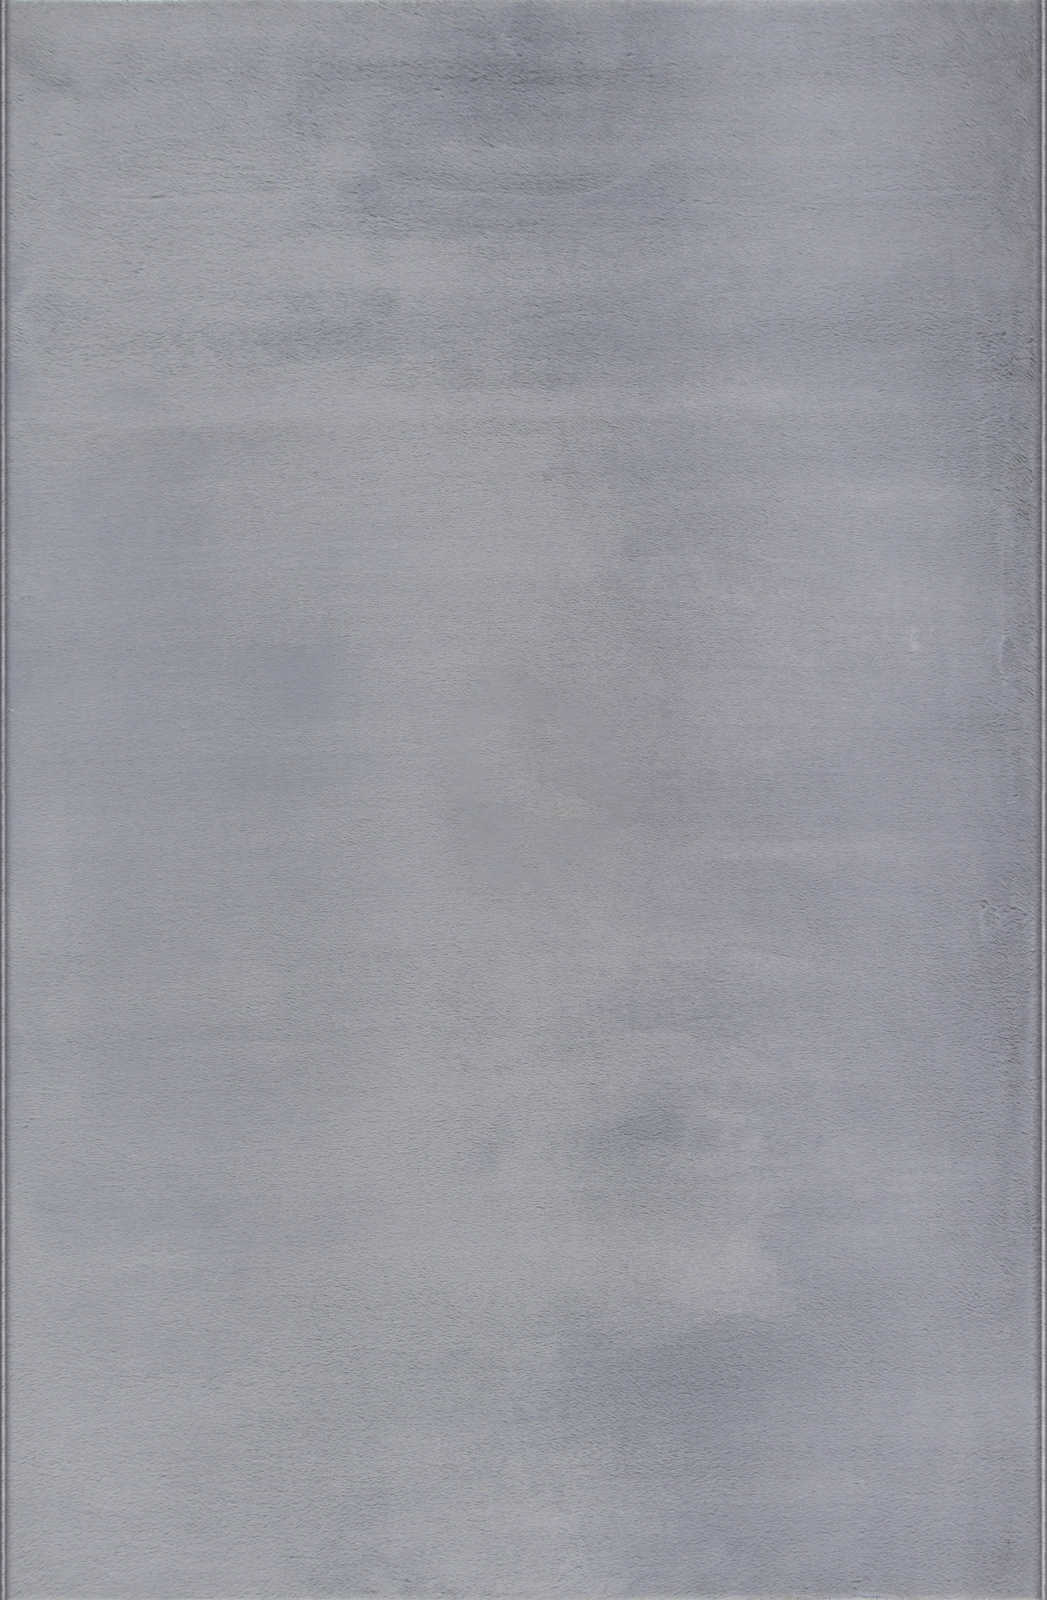             Angenehmer Hochflor Teppich in sanften Grau – 200 x 140 cm
        